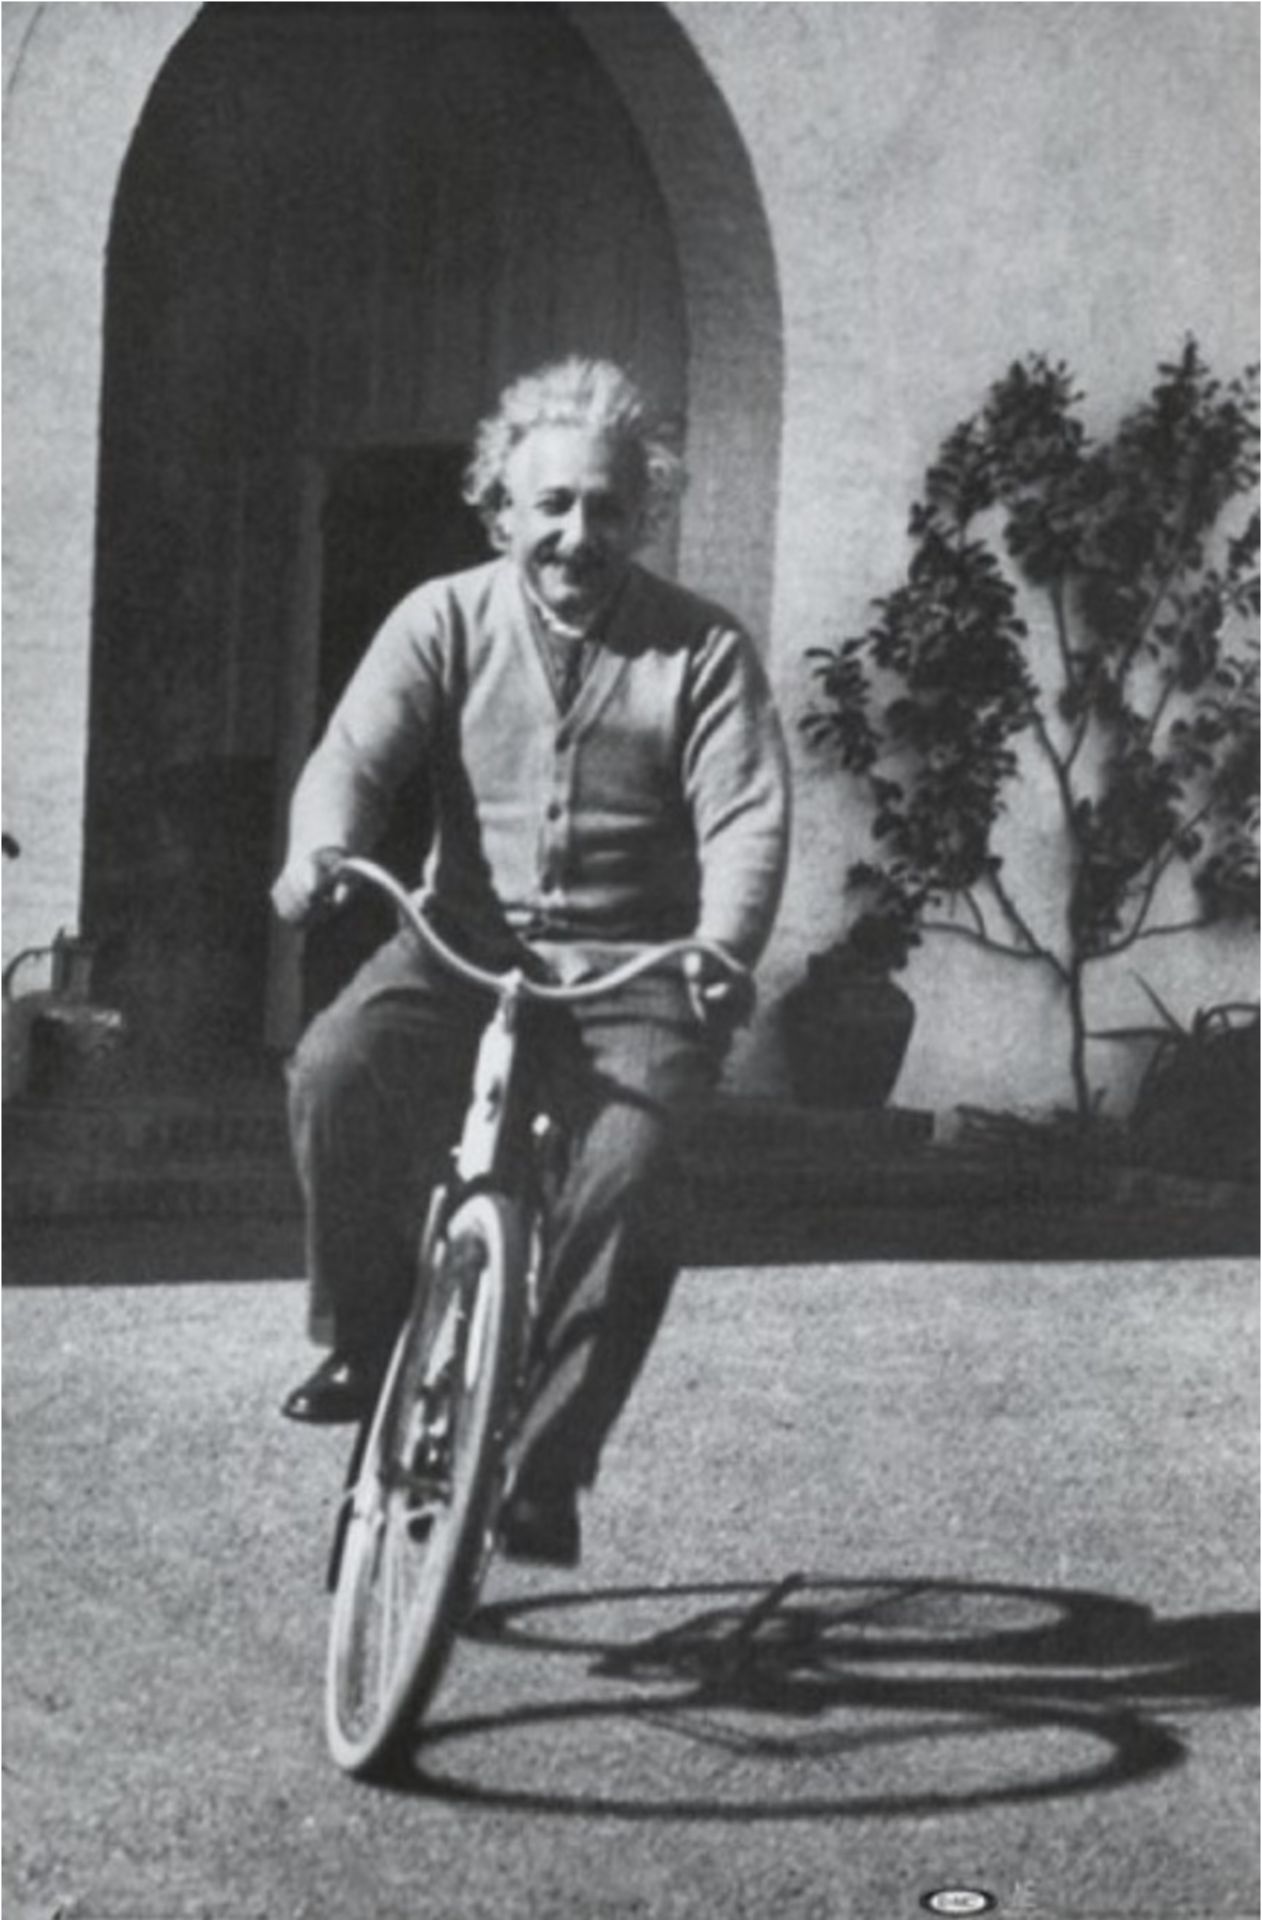 Albert Einstein "On Bicycle" Print